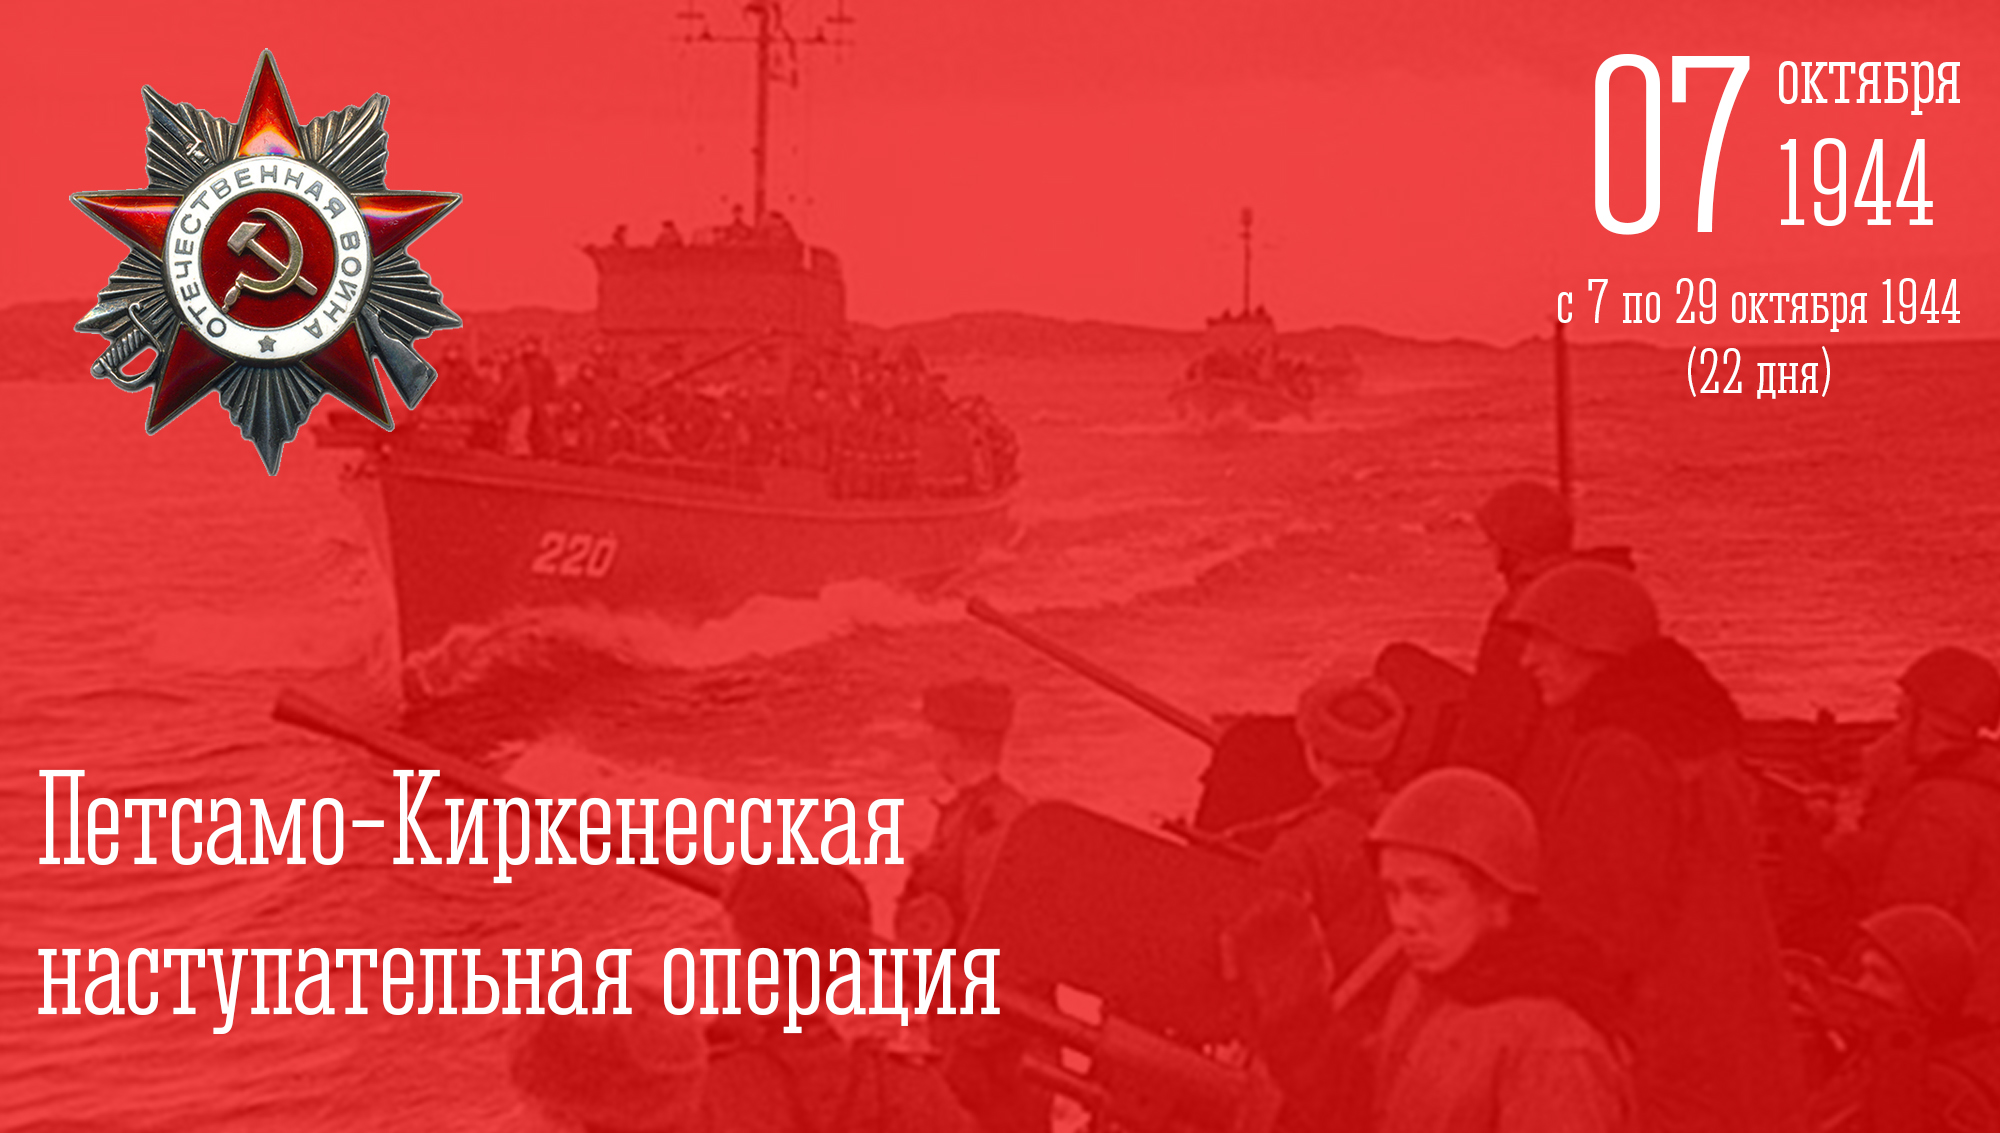 6 октября - «Оборона Советского Заполярья»